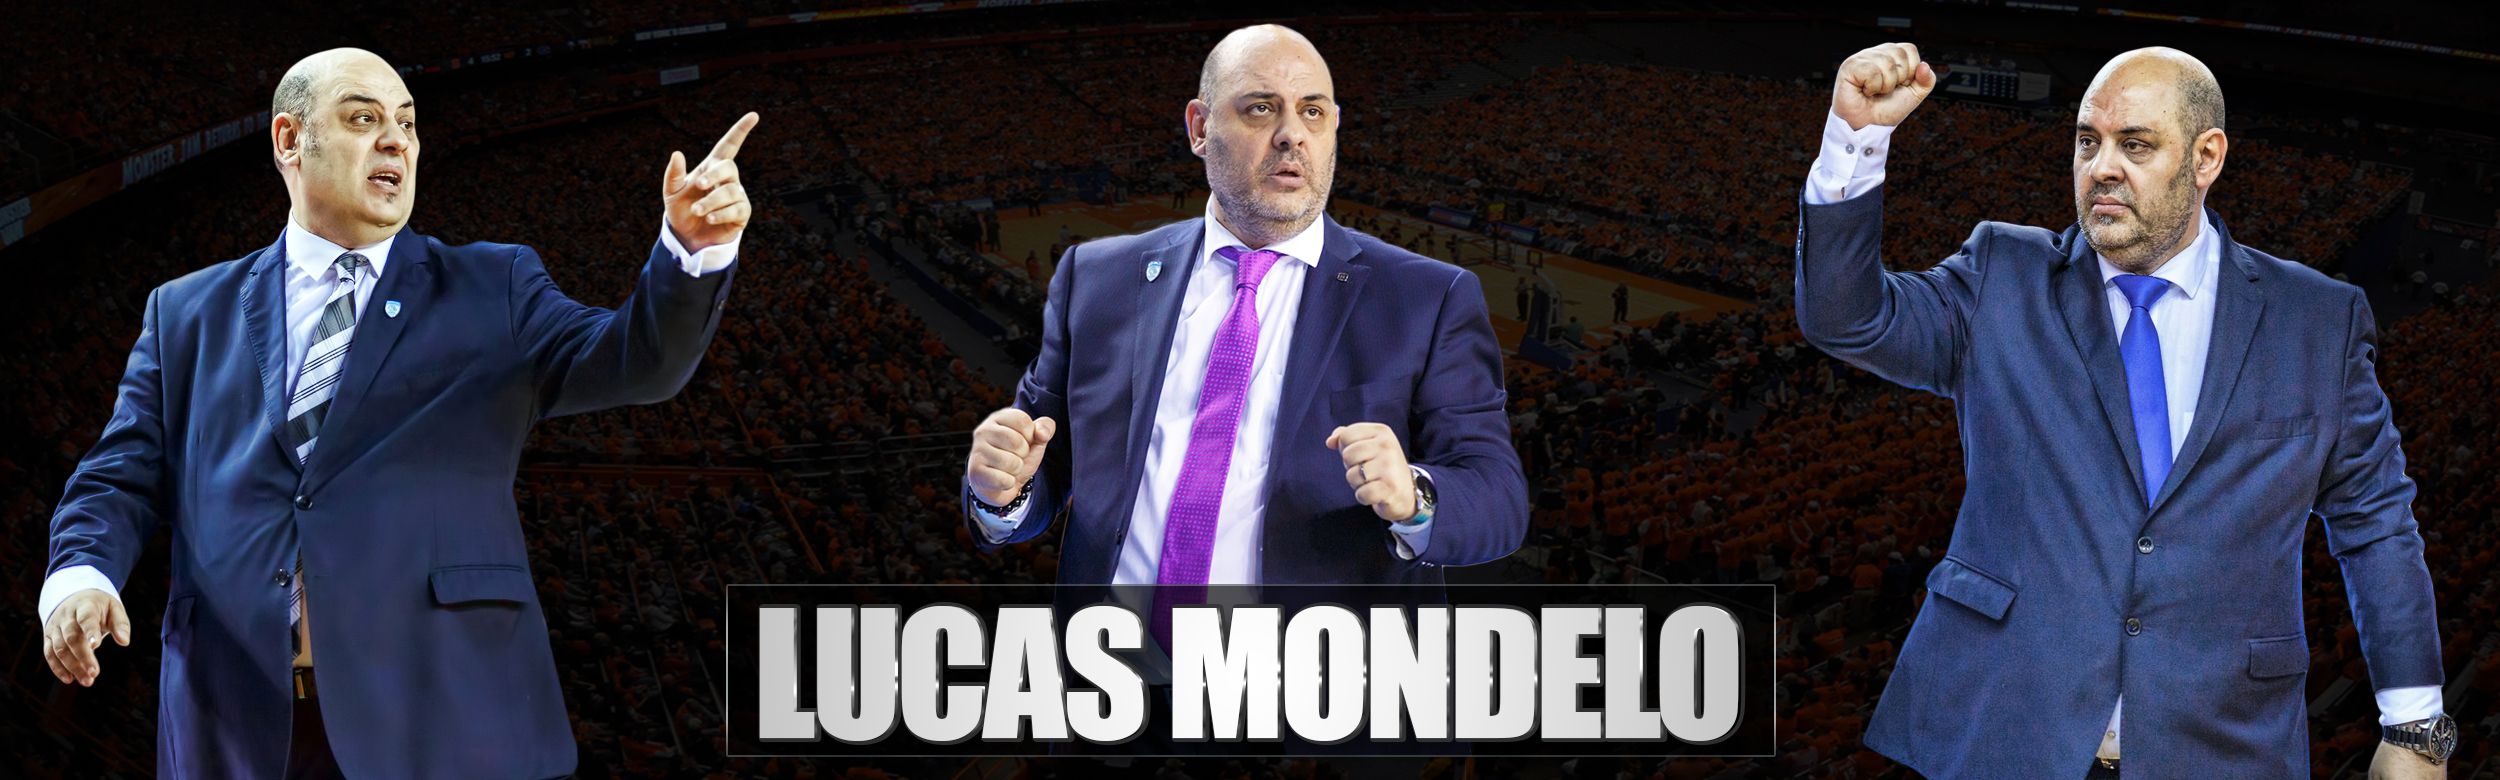 Lucas Mondelo